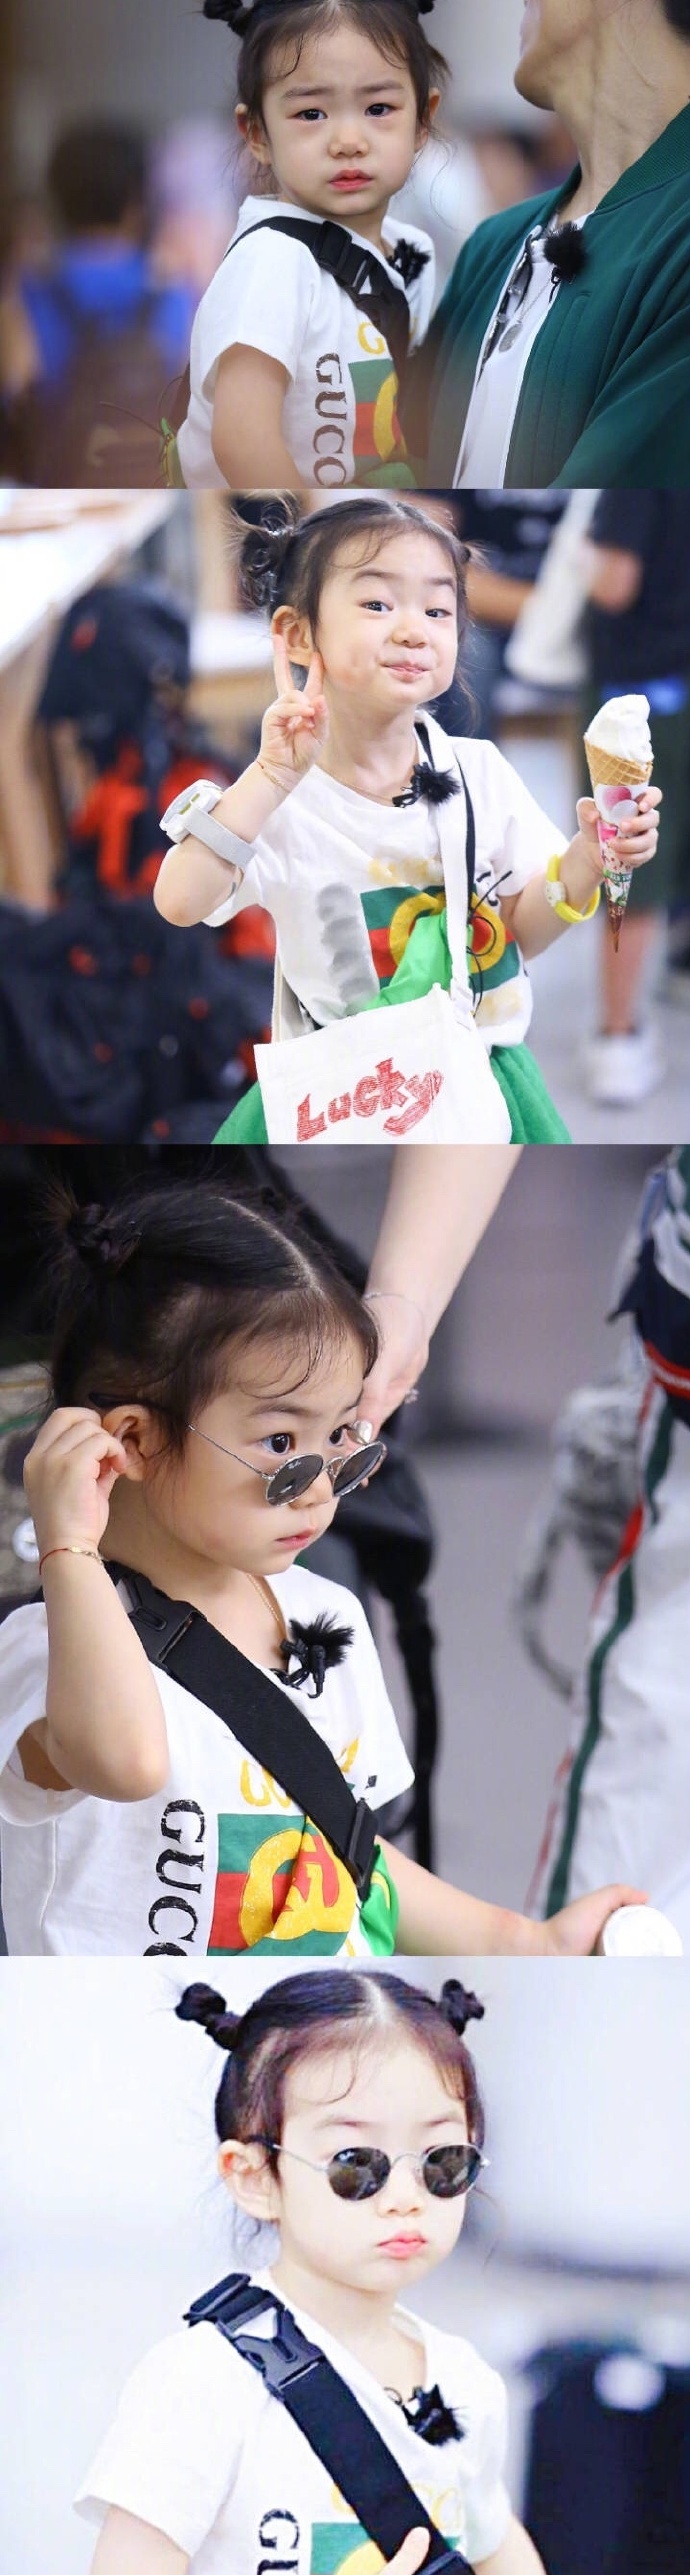 戚薇&李承铉的女儿 lucky李乐祺 神情什么的简直是mini版的戚哥嘛